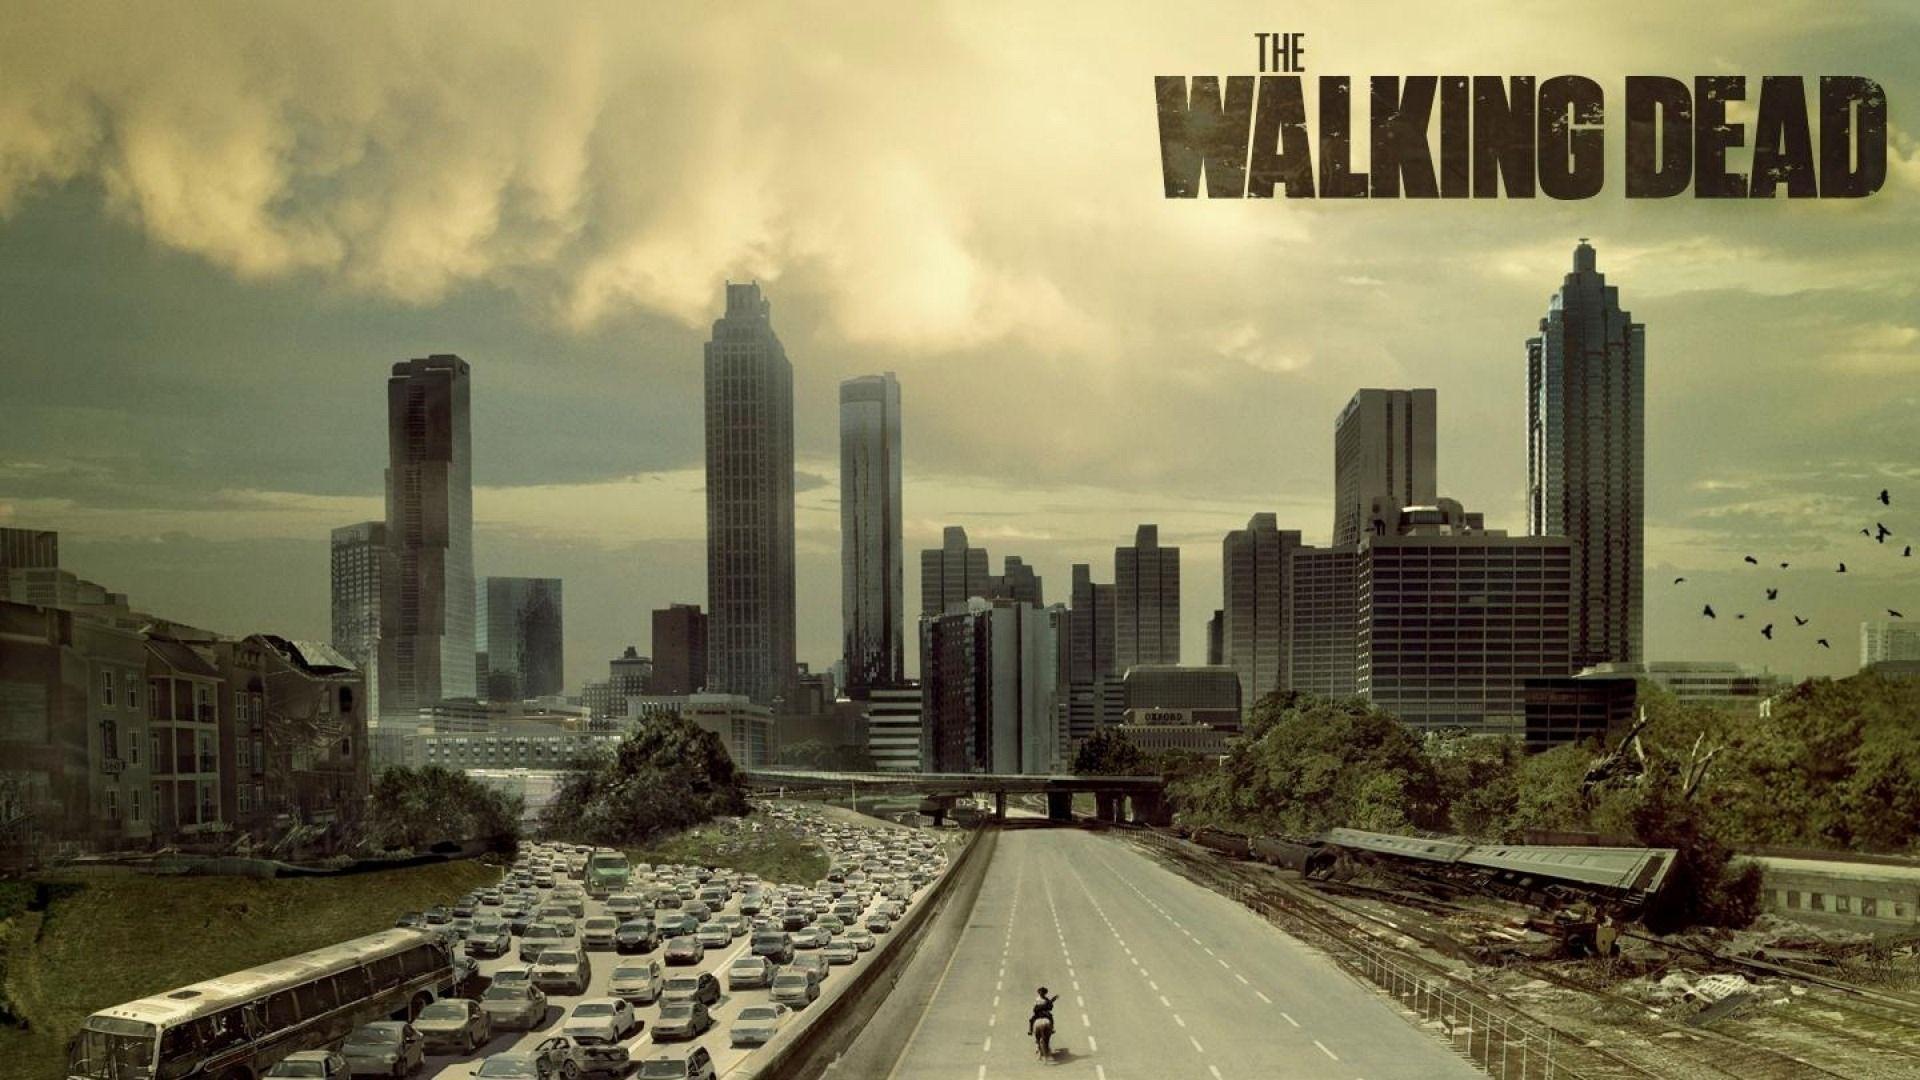 image For > The Walking Dead Season 3 Wallpaper 1920x1080